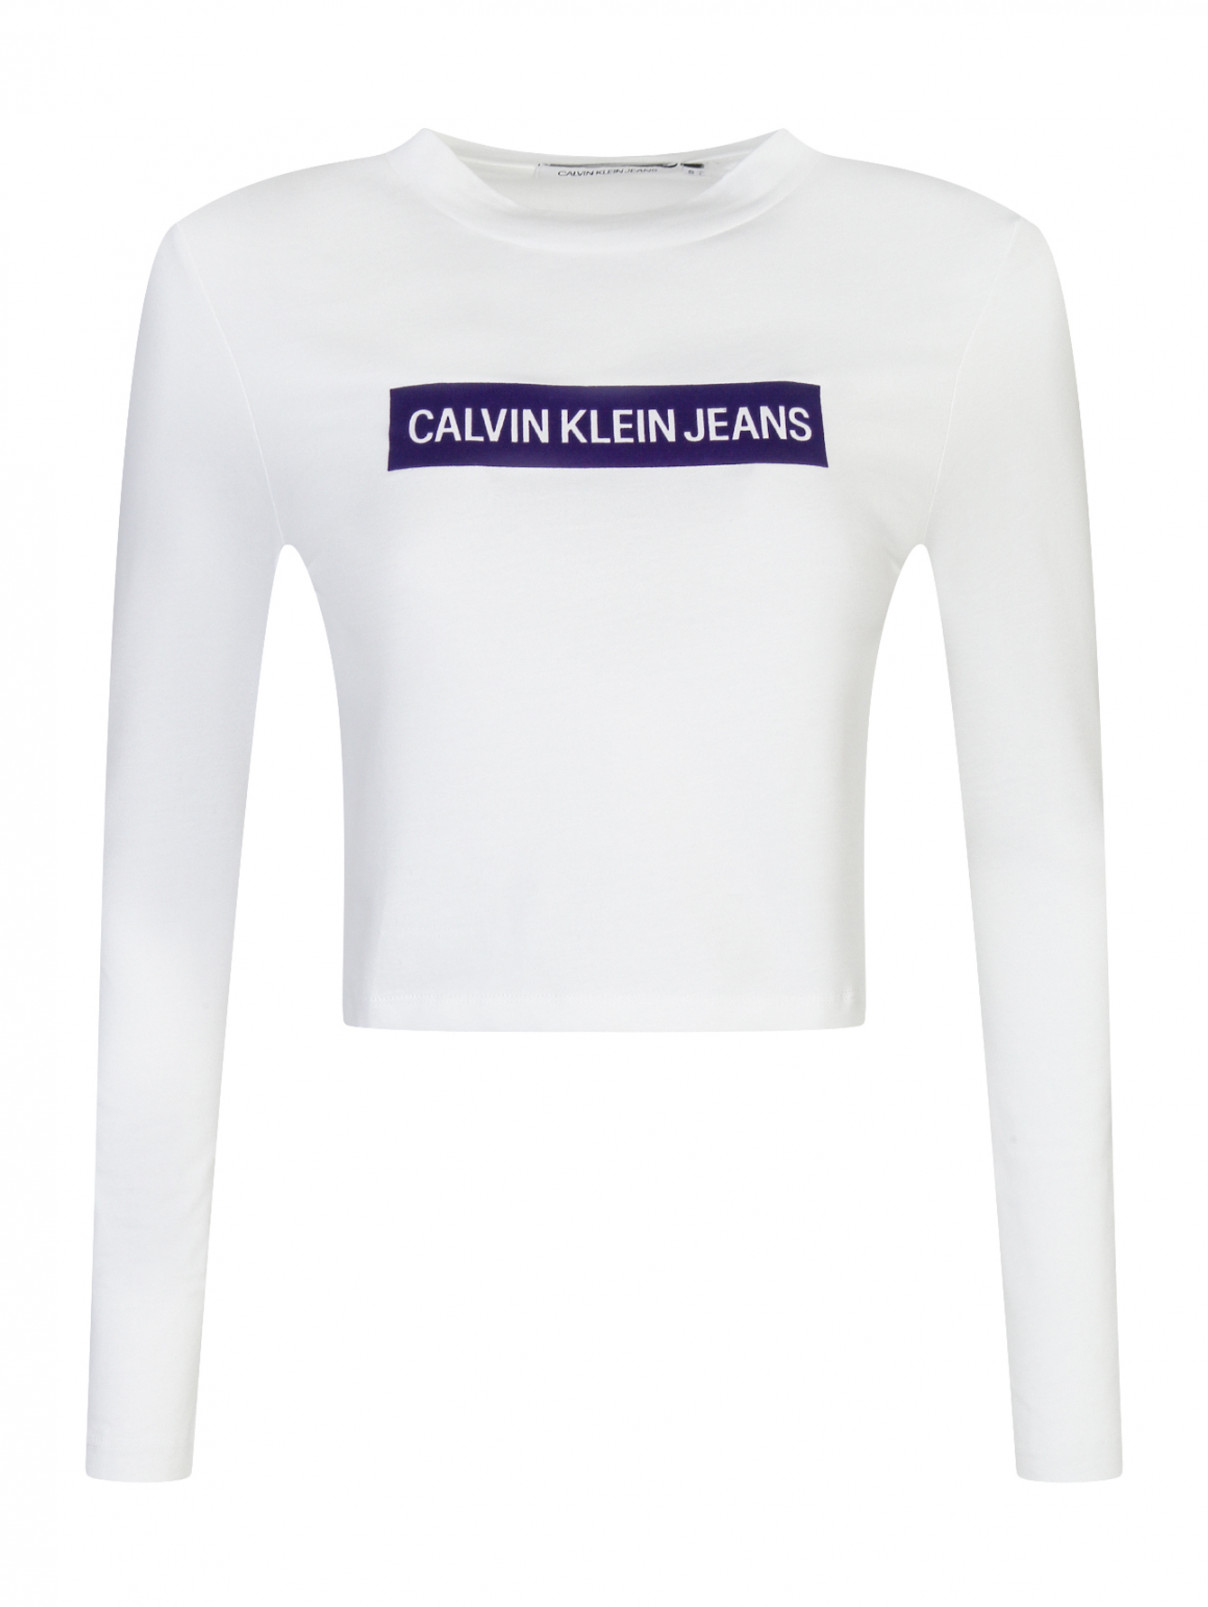 Укороченный топ из хлопка с принтом Calvin Klein  –  Общий вид  – Цвет:  Белый